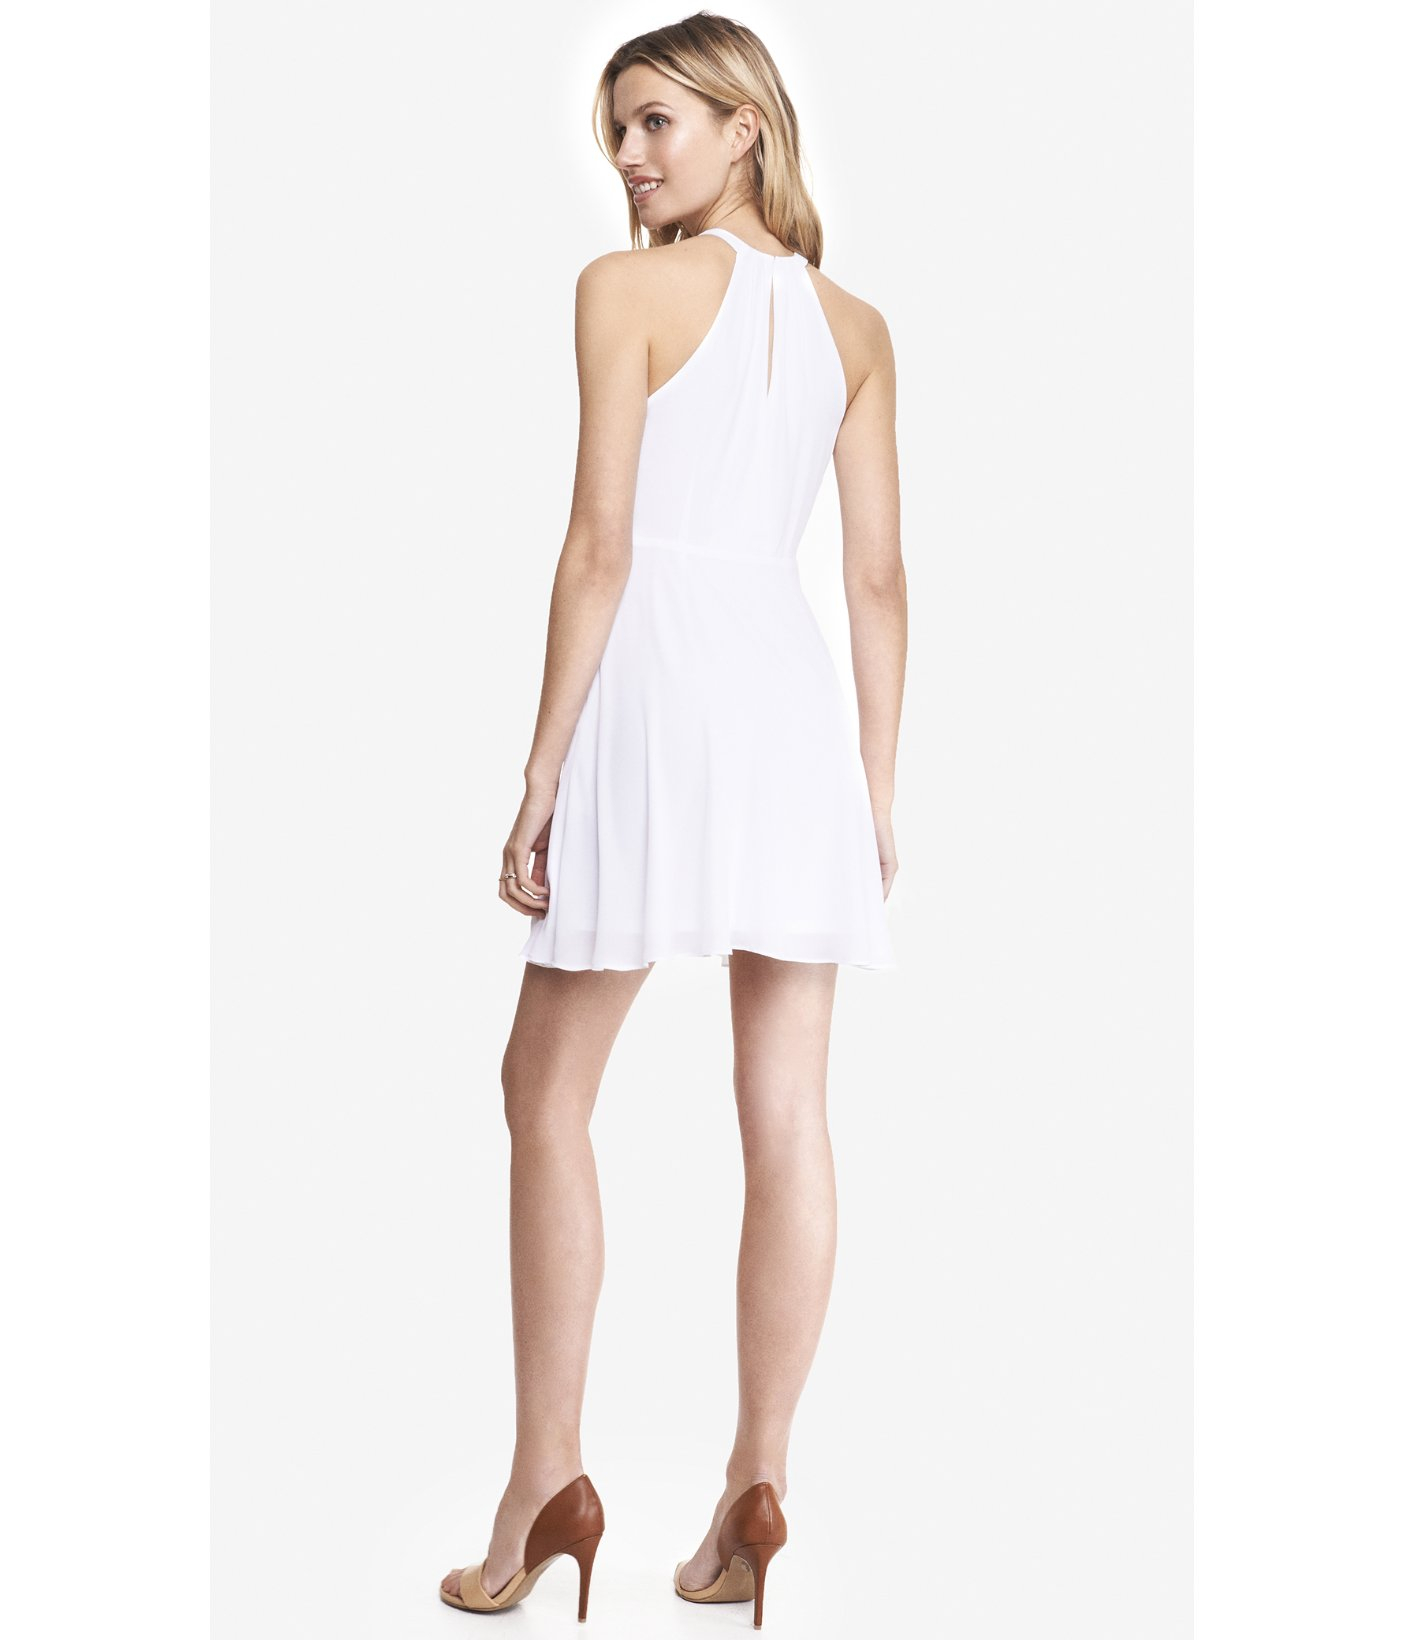 Buy > white halter dress > in stock